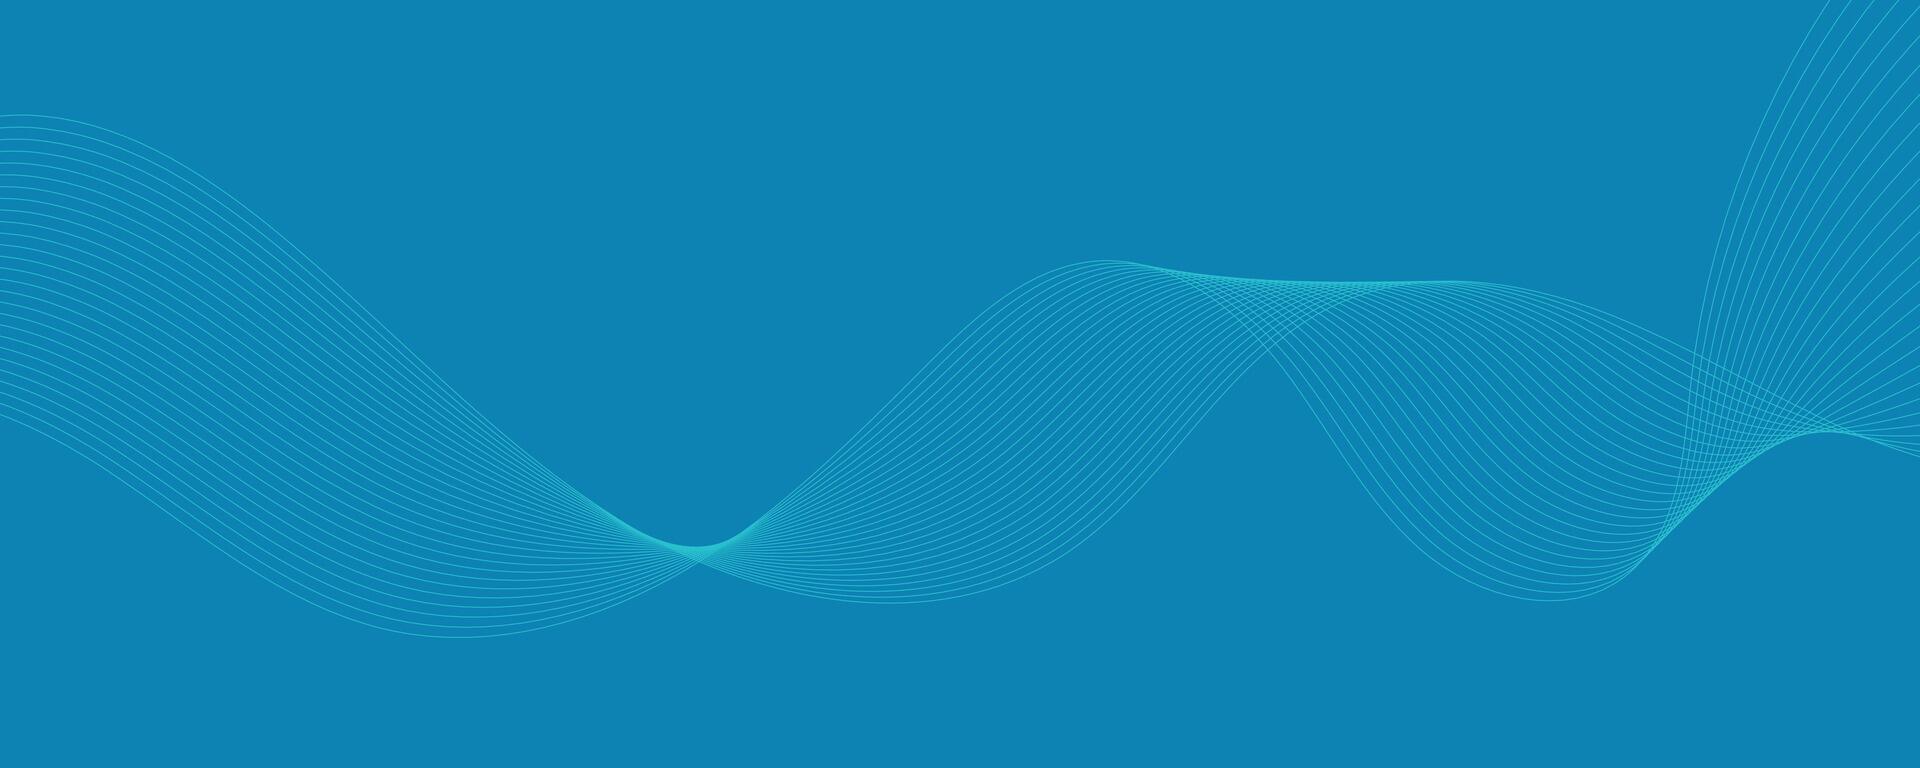 abstracte blauwe achtergrond met golven vector